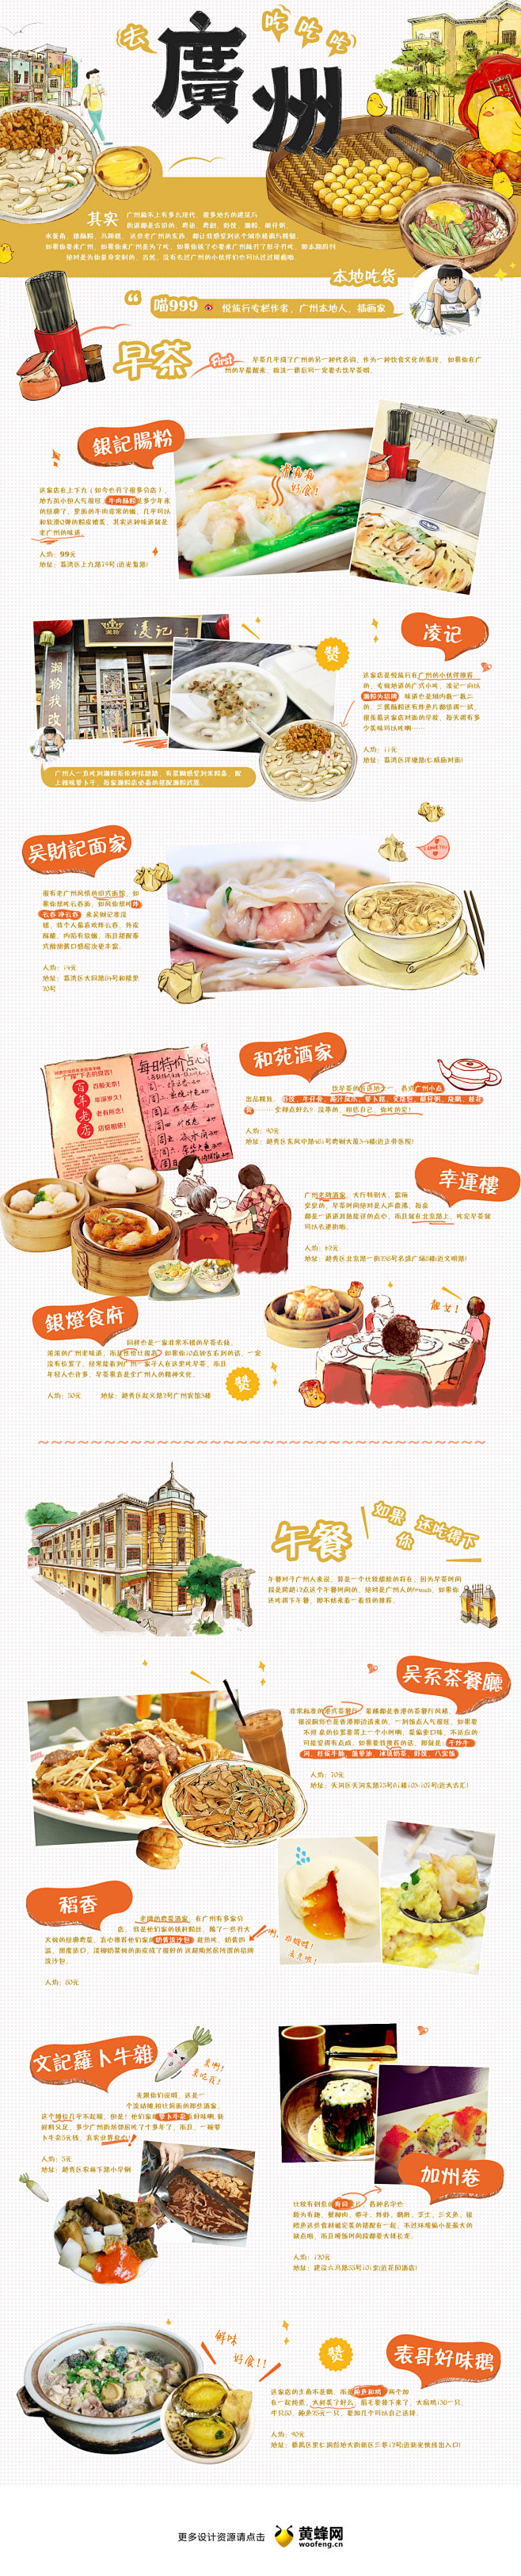 美食专题：如果你要来广州做一个吃货，来源...